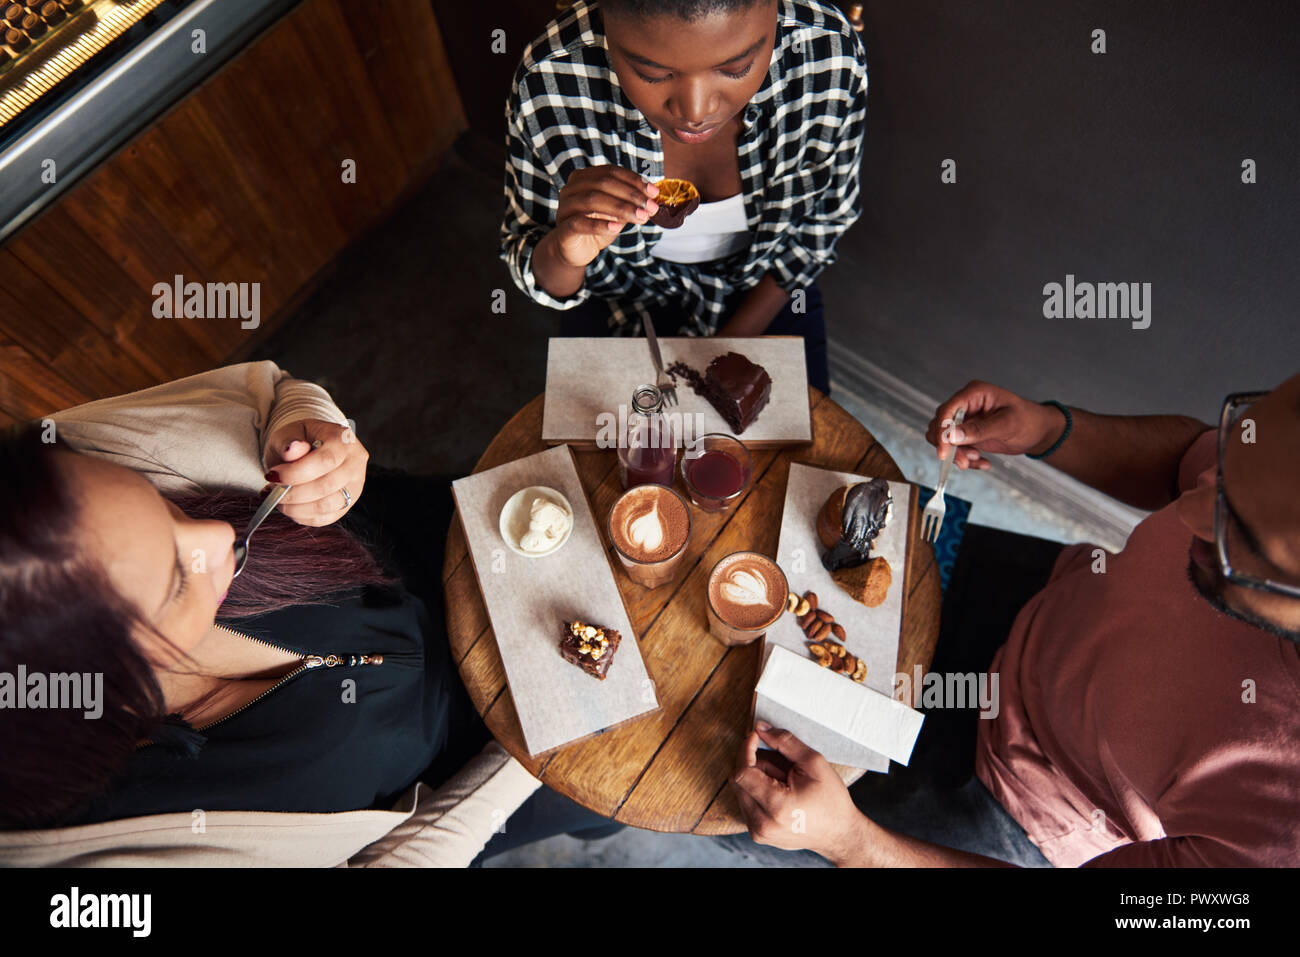 Freunde in einem Café Tisch köstliche Desserts sitzen zusammen Stockfoto